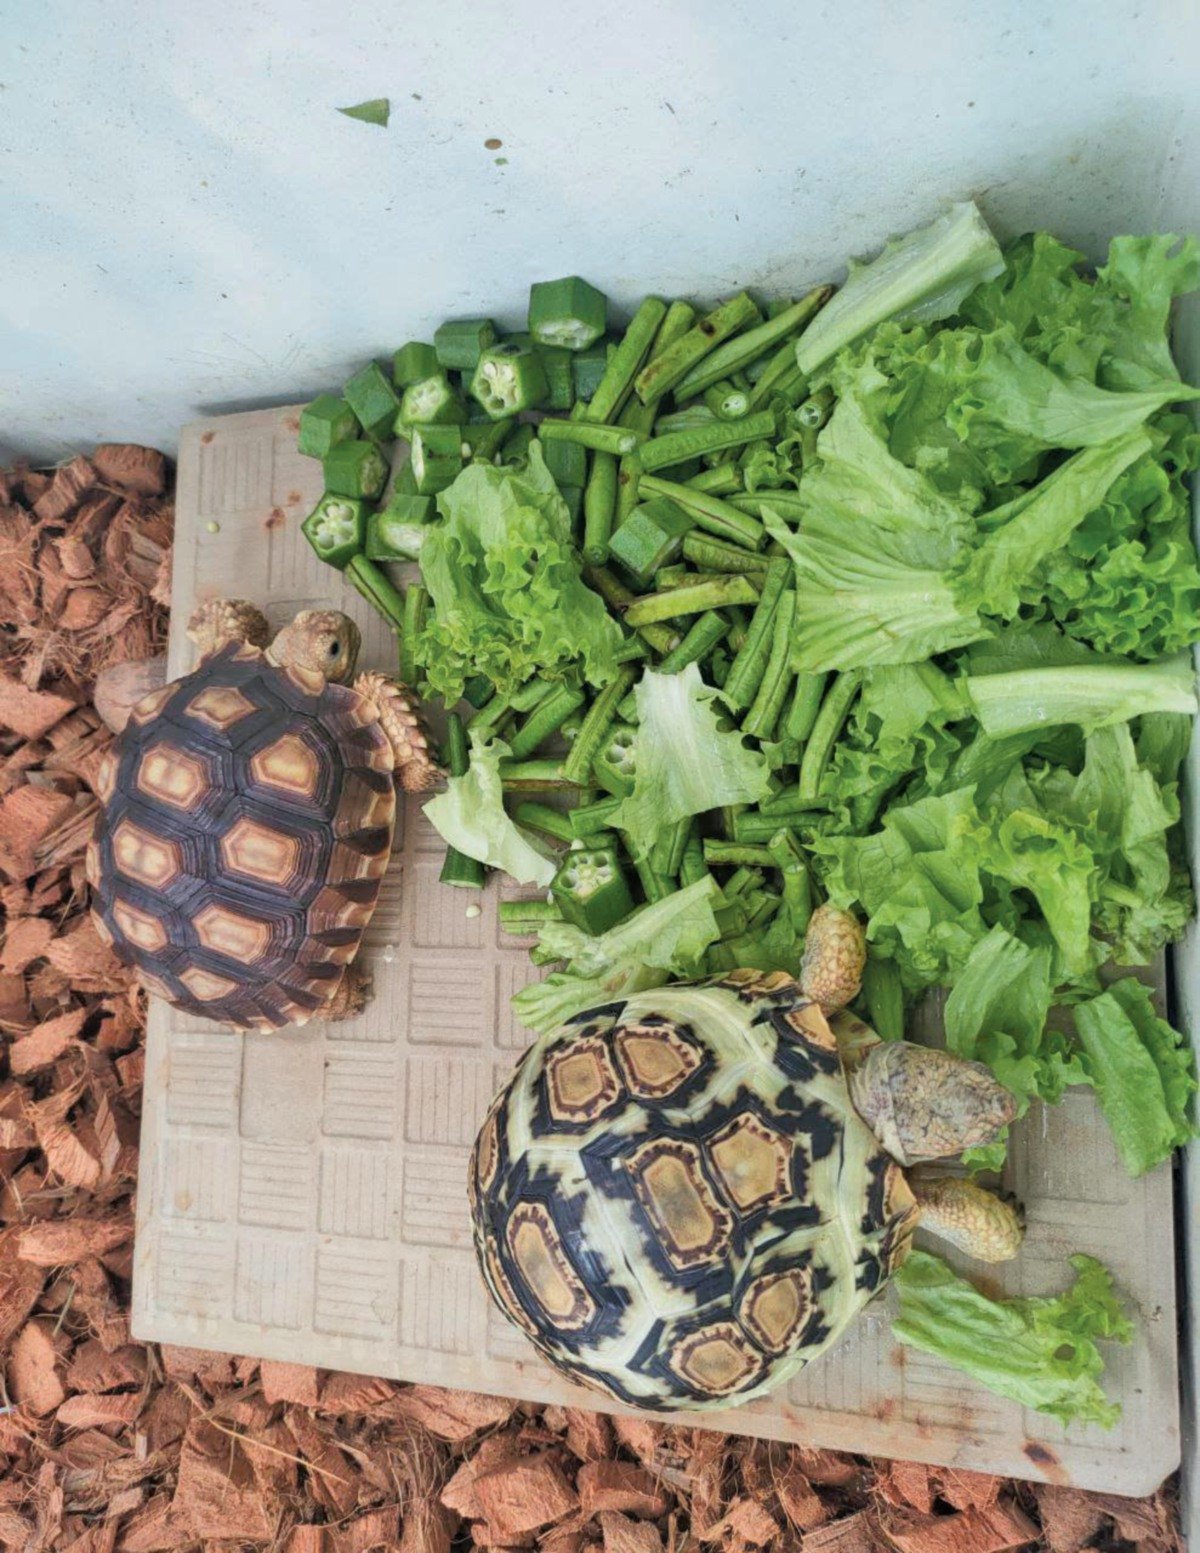 SAYUR-sayuran juga menjadi makanan kegemaran kura-kura berkenaan.